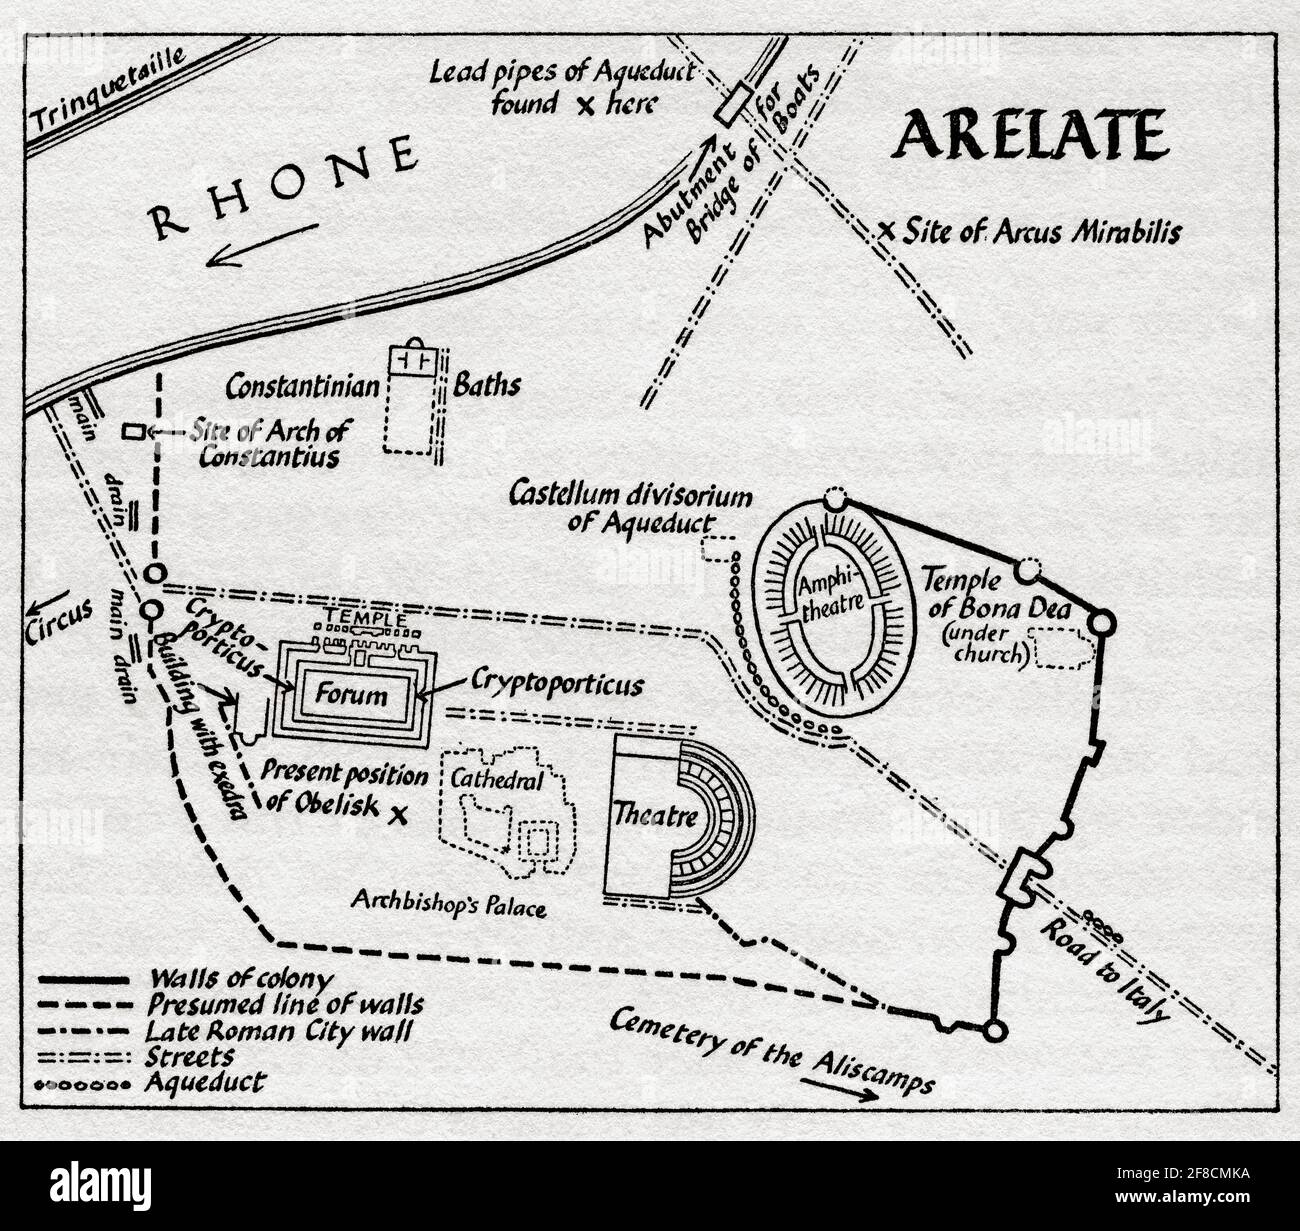 Grundrisse der antiken gallo-römischen Stadt Arelate (Arles), die das Forum, das Theater und den Tempel von Bona Dea zeigt. Nach einer Illustration von Edgar Holloway. Stockfoto